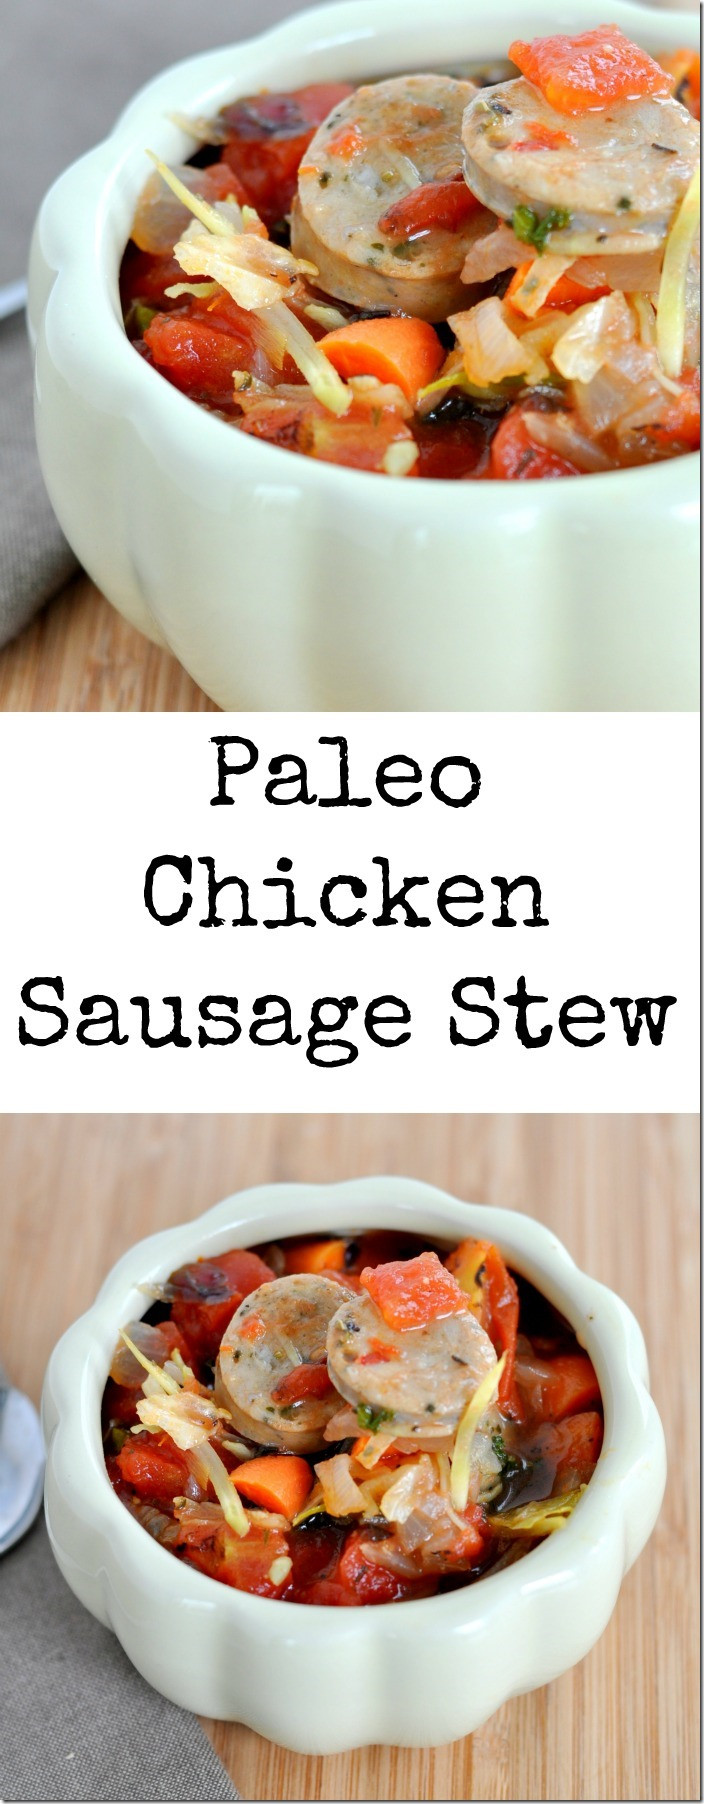 Paleo Chicken Sausage Recipes
 Paleo Chicken Sausage Stew My Suburban Kitchen